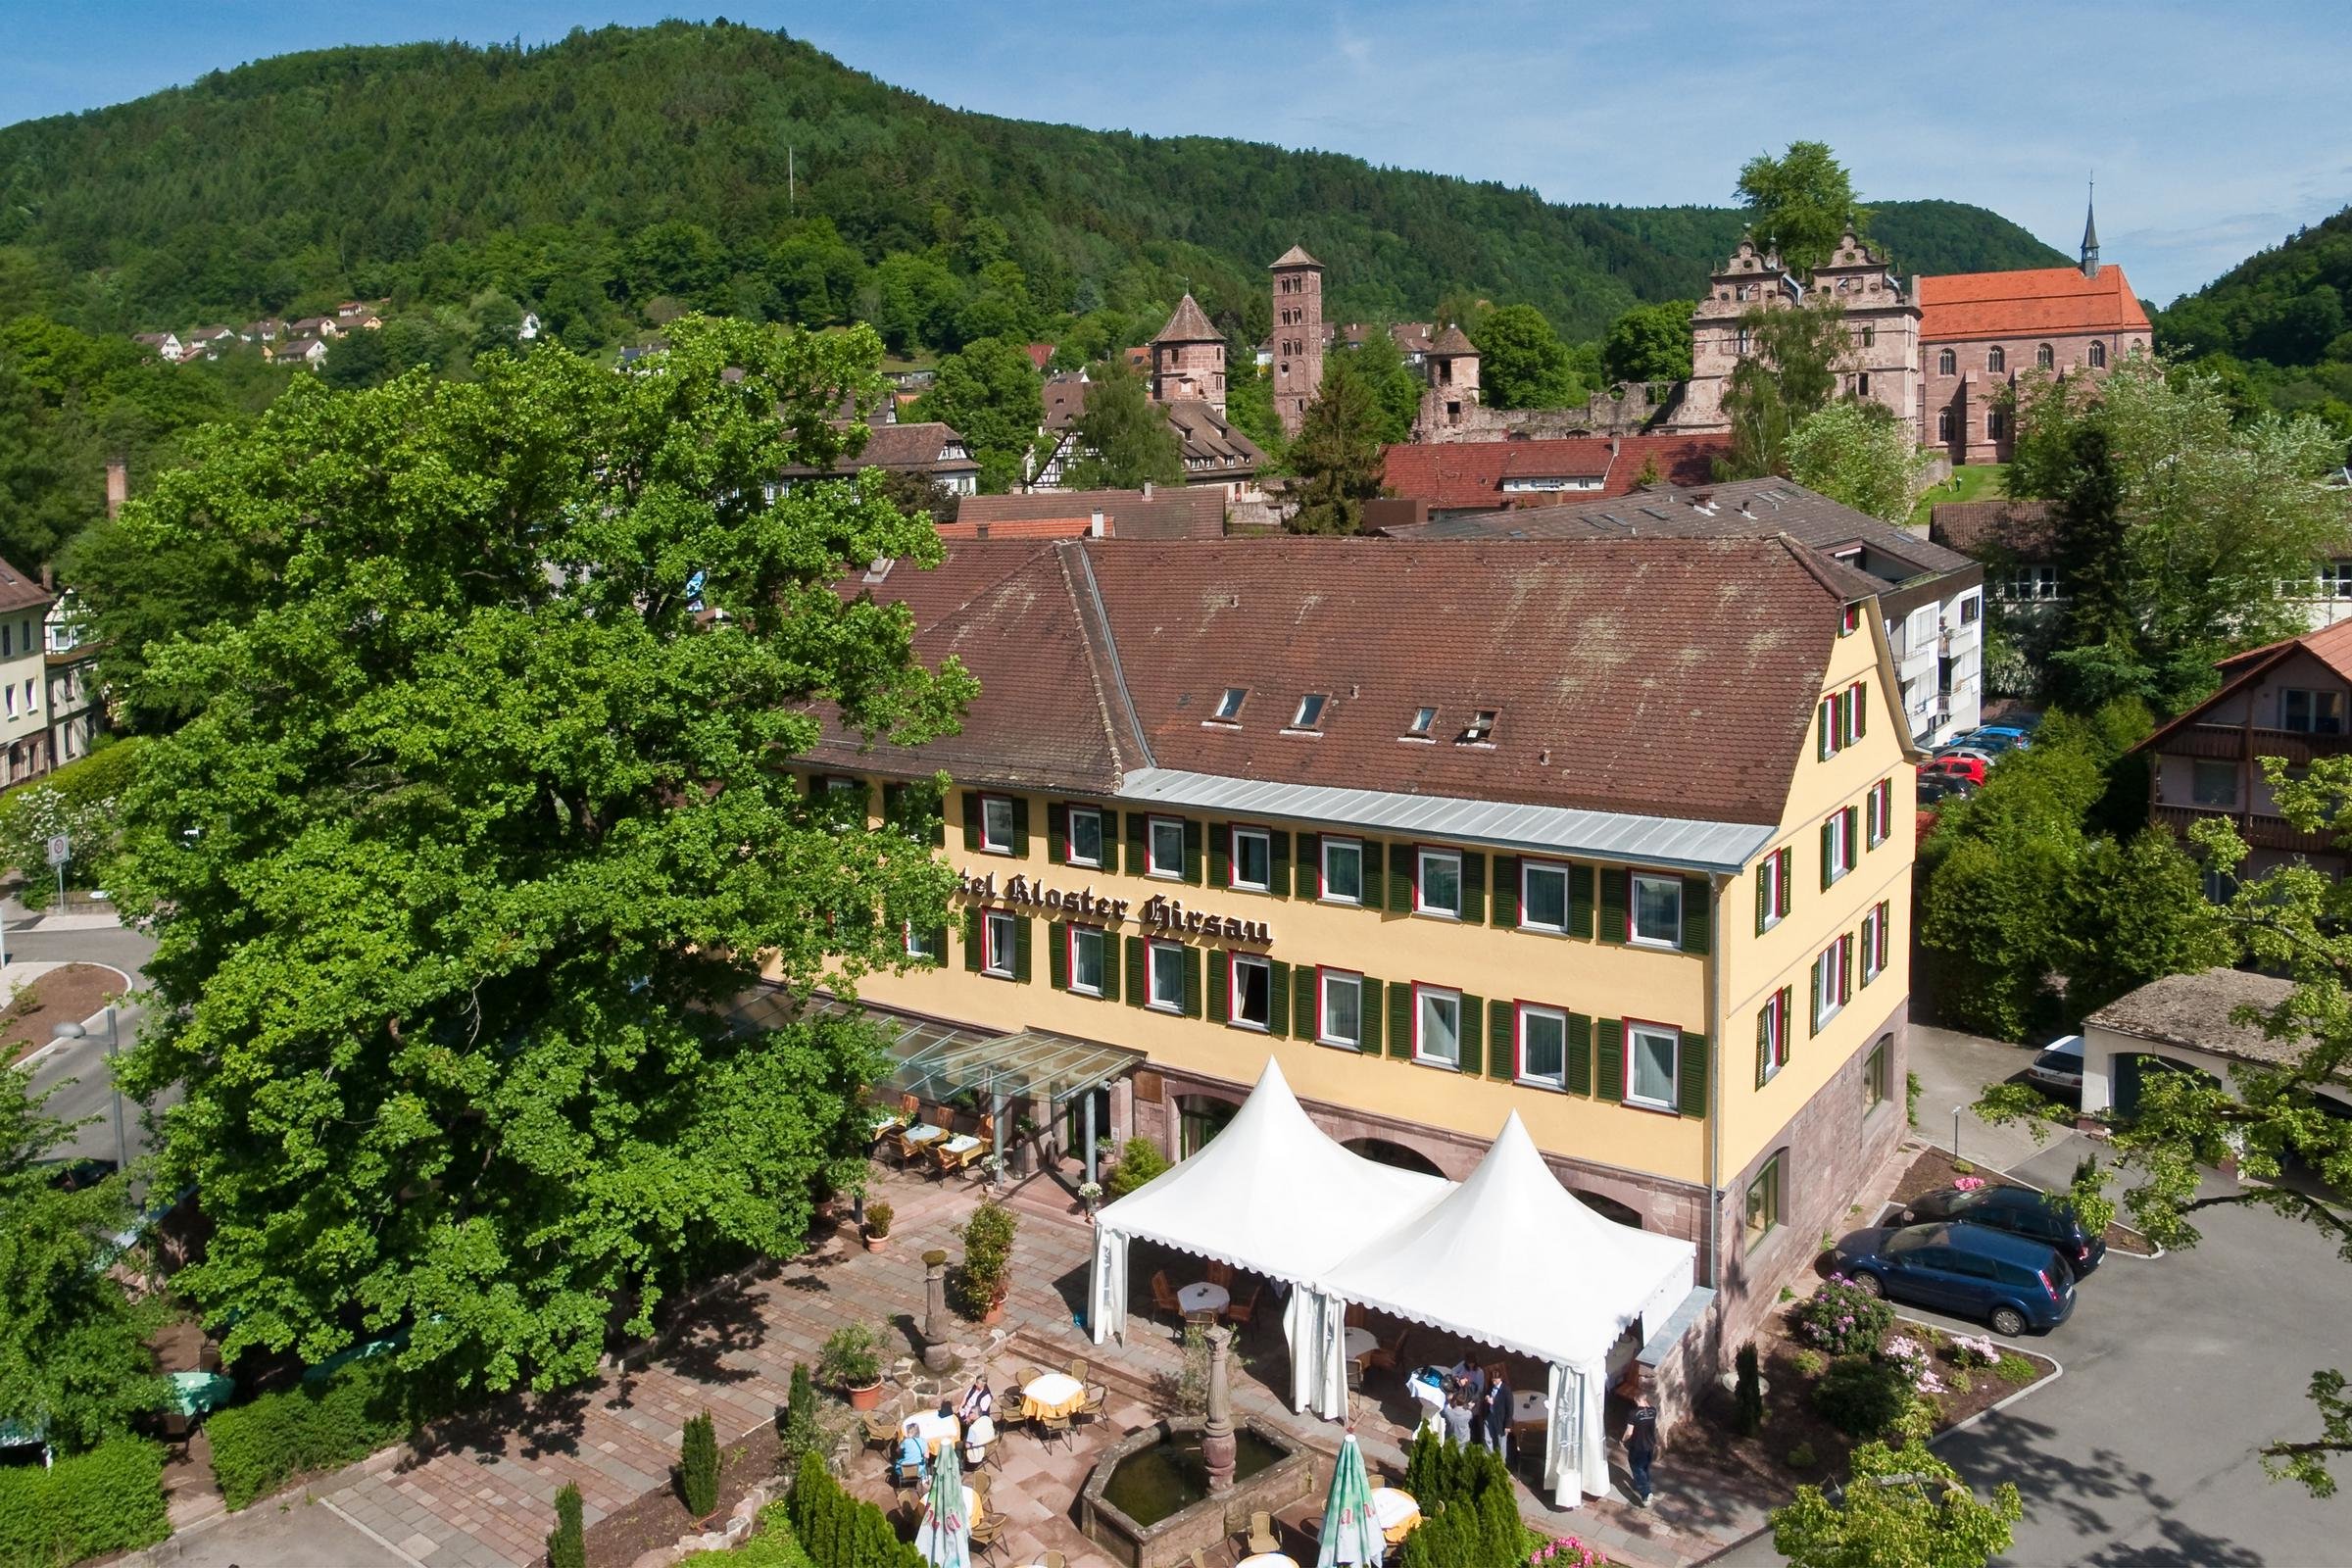 5 Tage Karnevalsflüchtlinge – Hotel Kloster Hirsau (4 Sterne) in Calw, Baden-Württemberg inkl. Halbpension